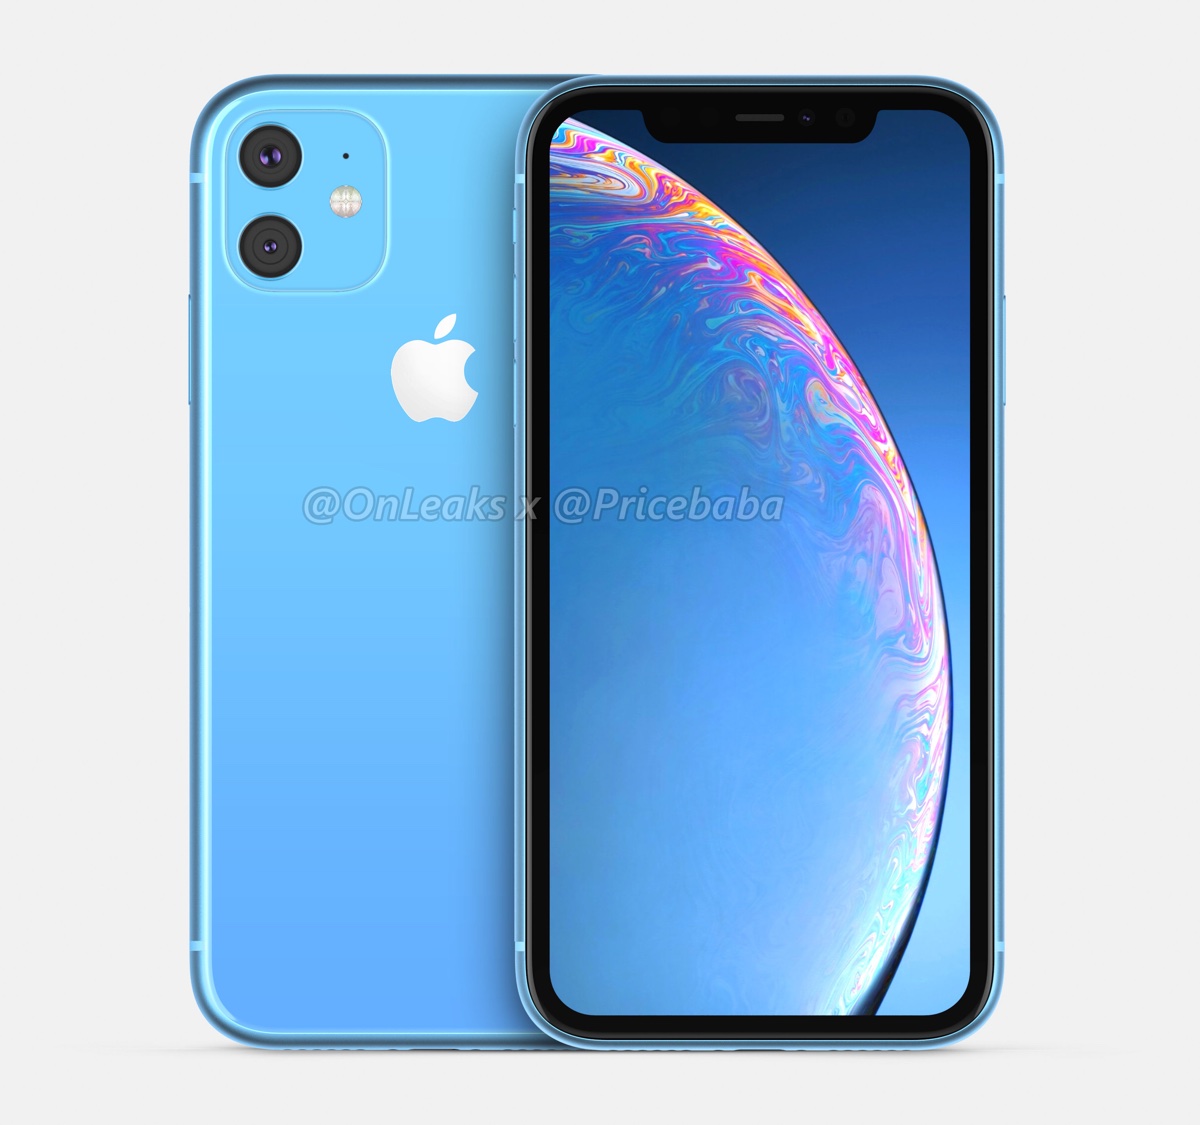 iPhone XR 2019 per la prima volta i render mostrano la doppia fotocamera